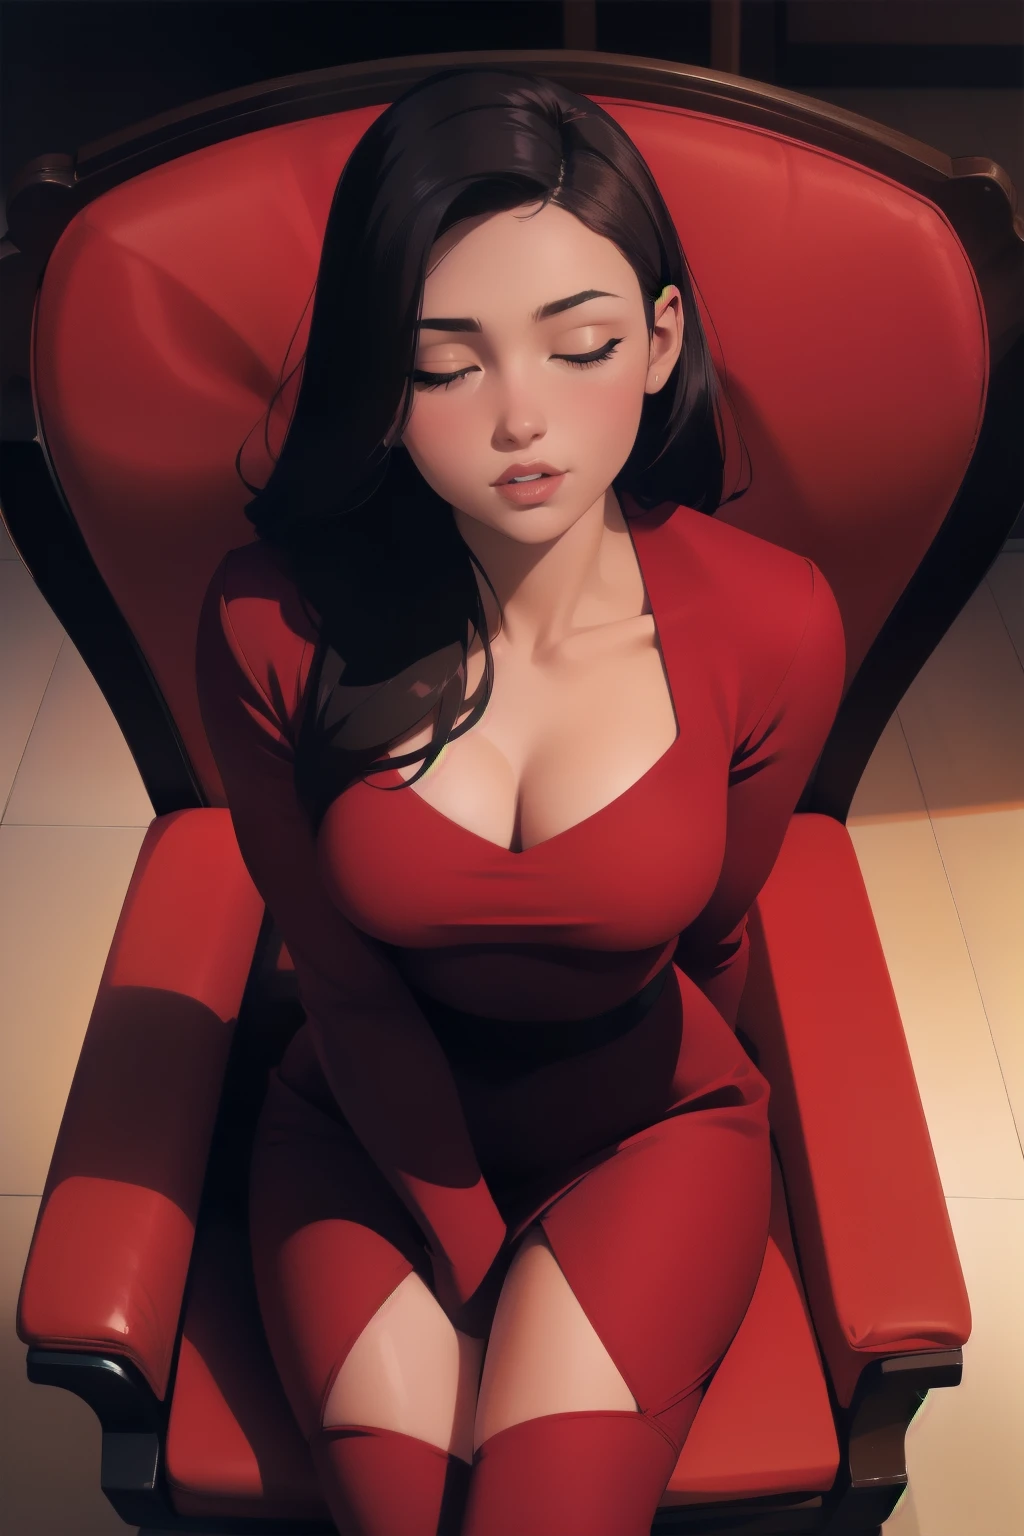 Young сексуальный woman wearing a red dress sitting on a chair, Тусклое освещение, сексуальный, горячий, похотливый